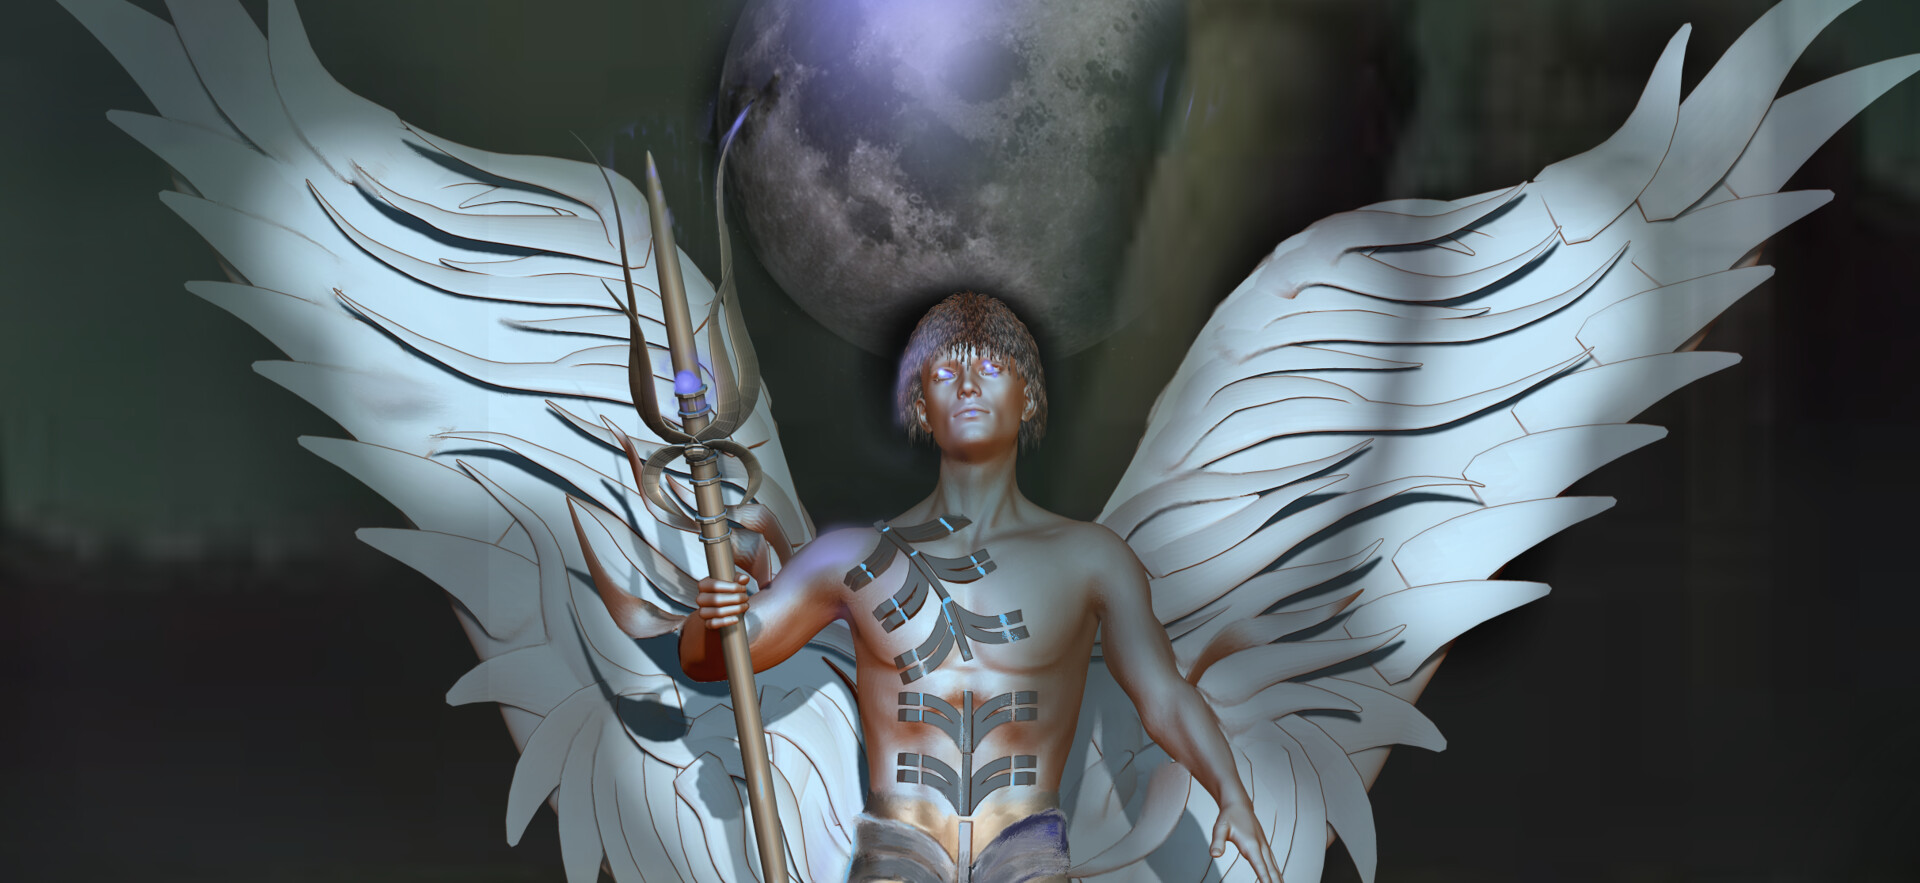 warrior angel backgrounds